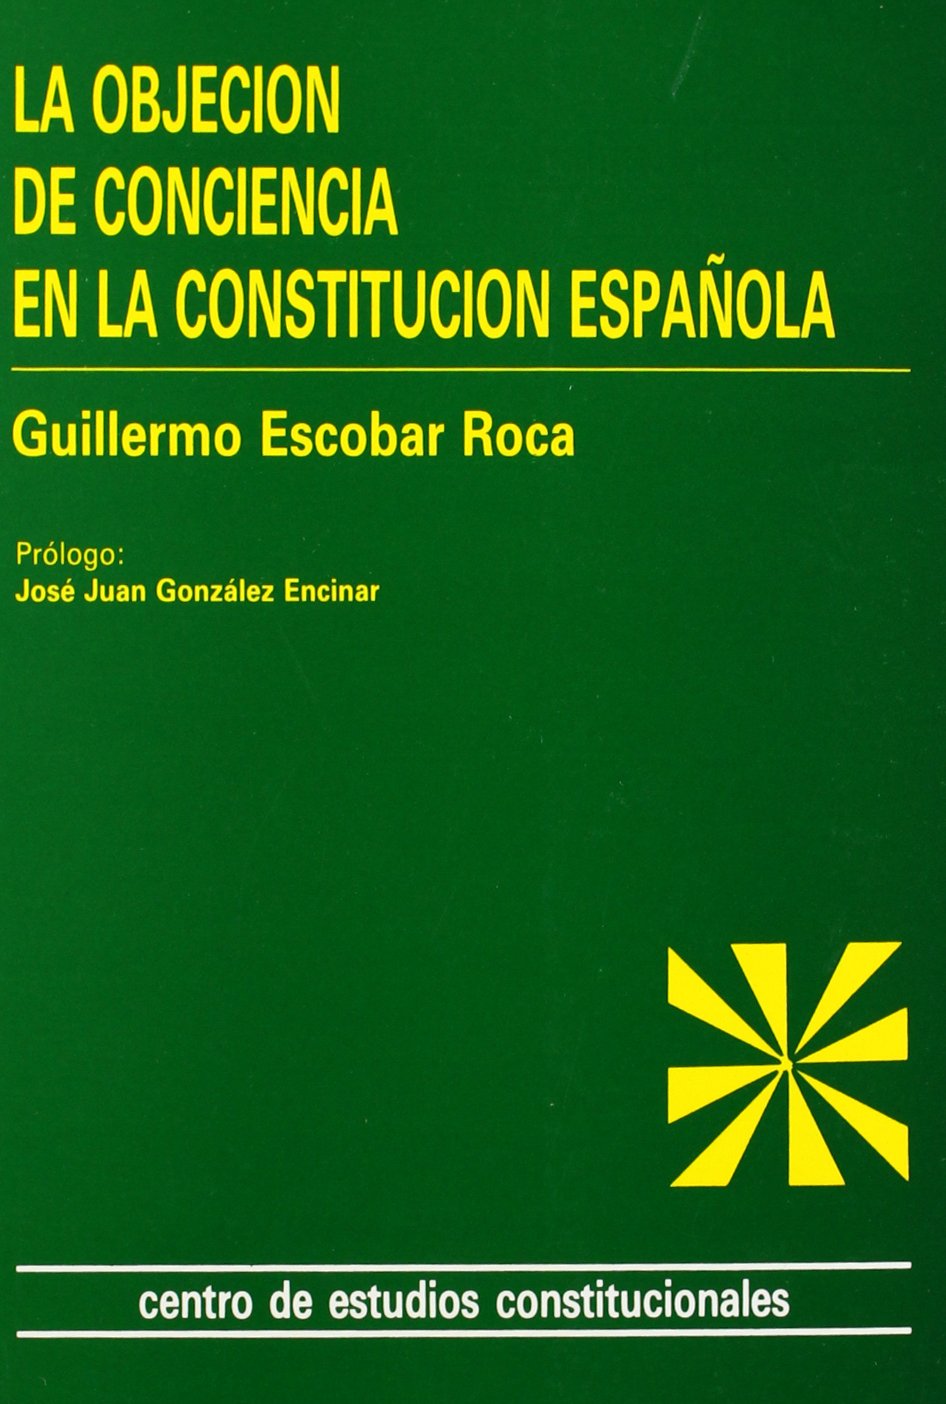 La objeción de conciencia en la Constitucion española